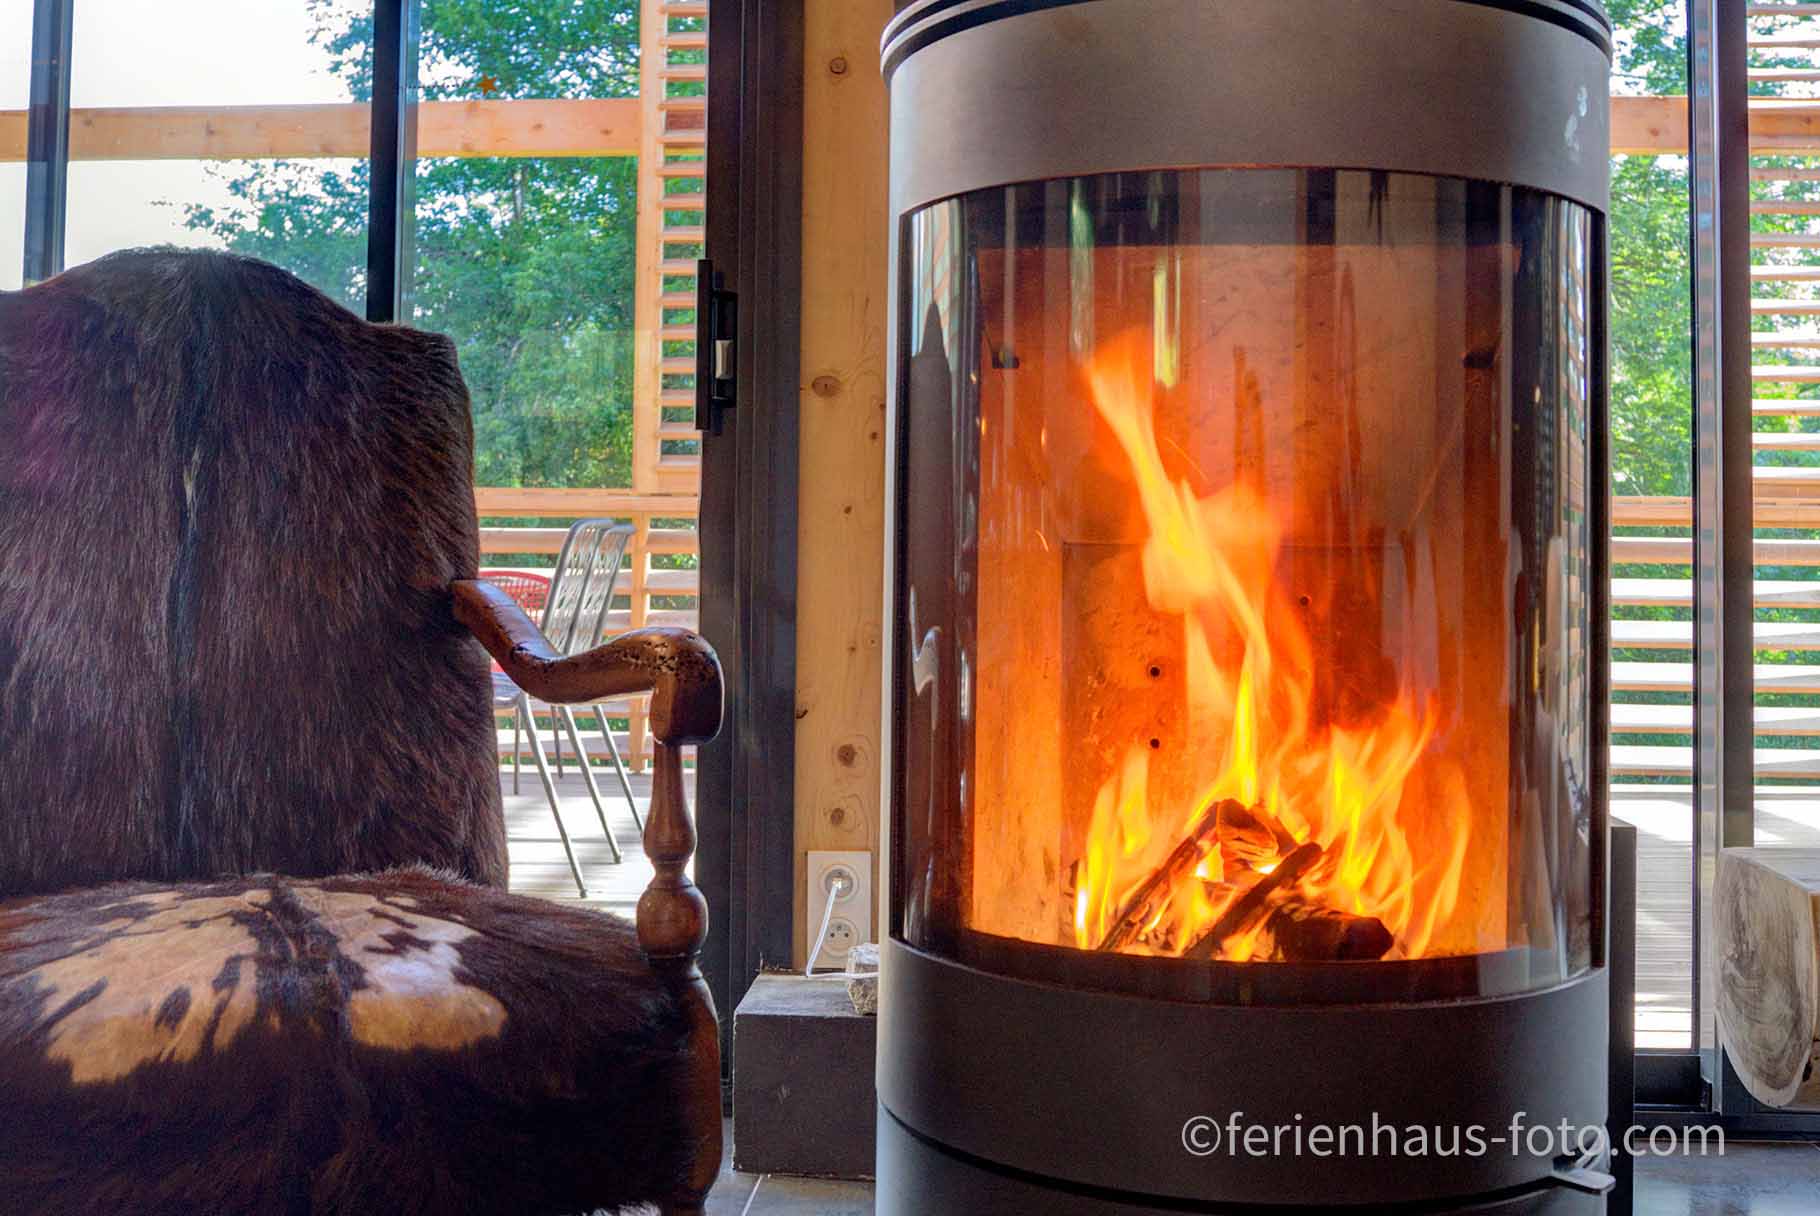 ferienhaus foto brennender kamin schwedenofen mit sessel